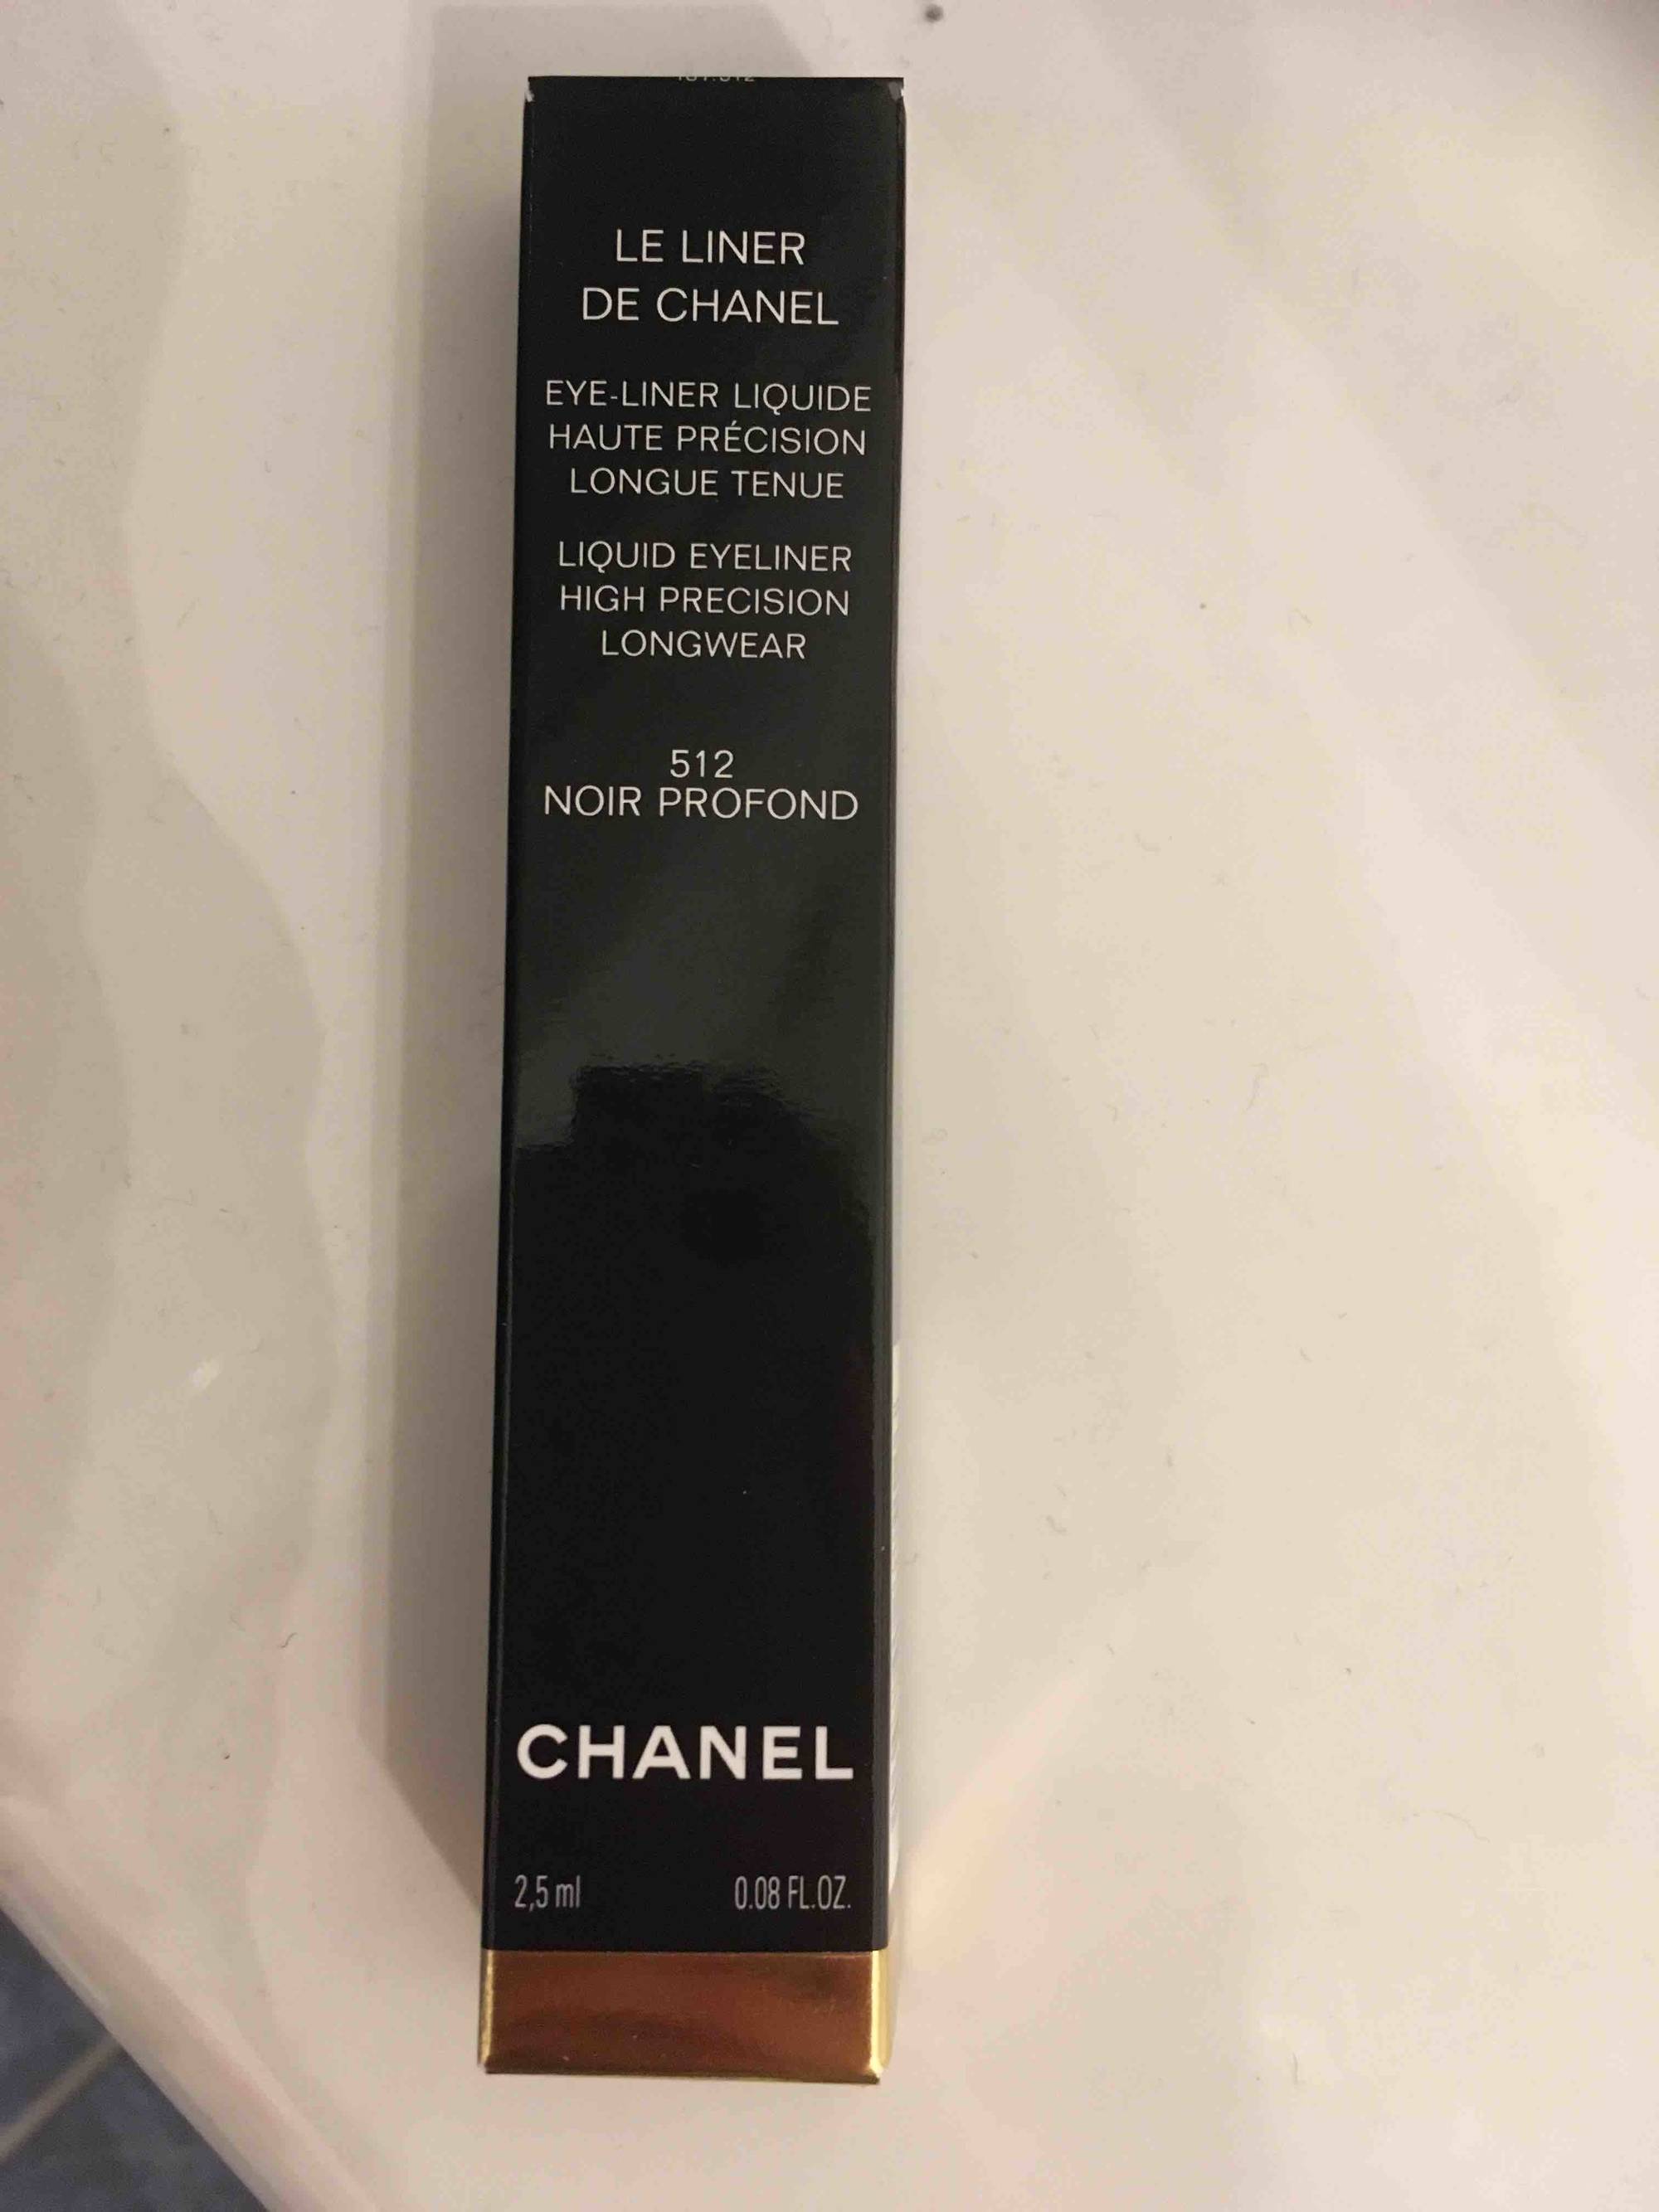 Composition CHANEL Le liner de Chanel - Eye liner liquide 512 noir